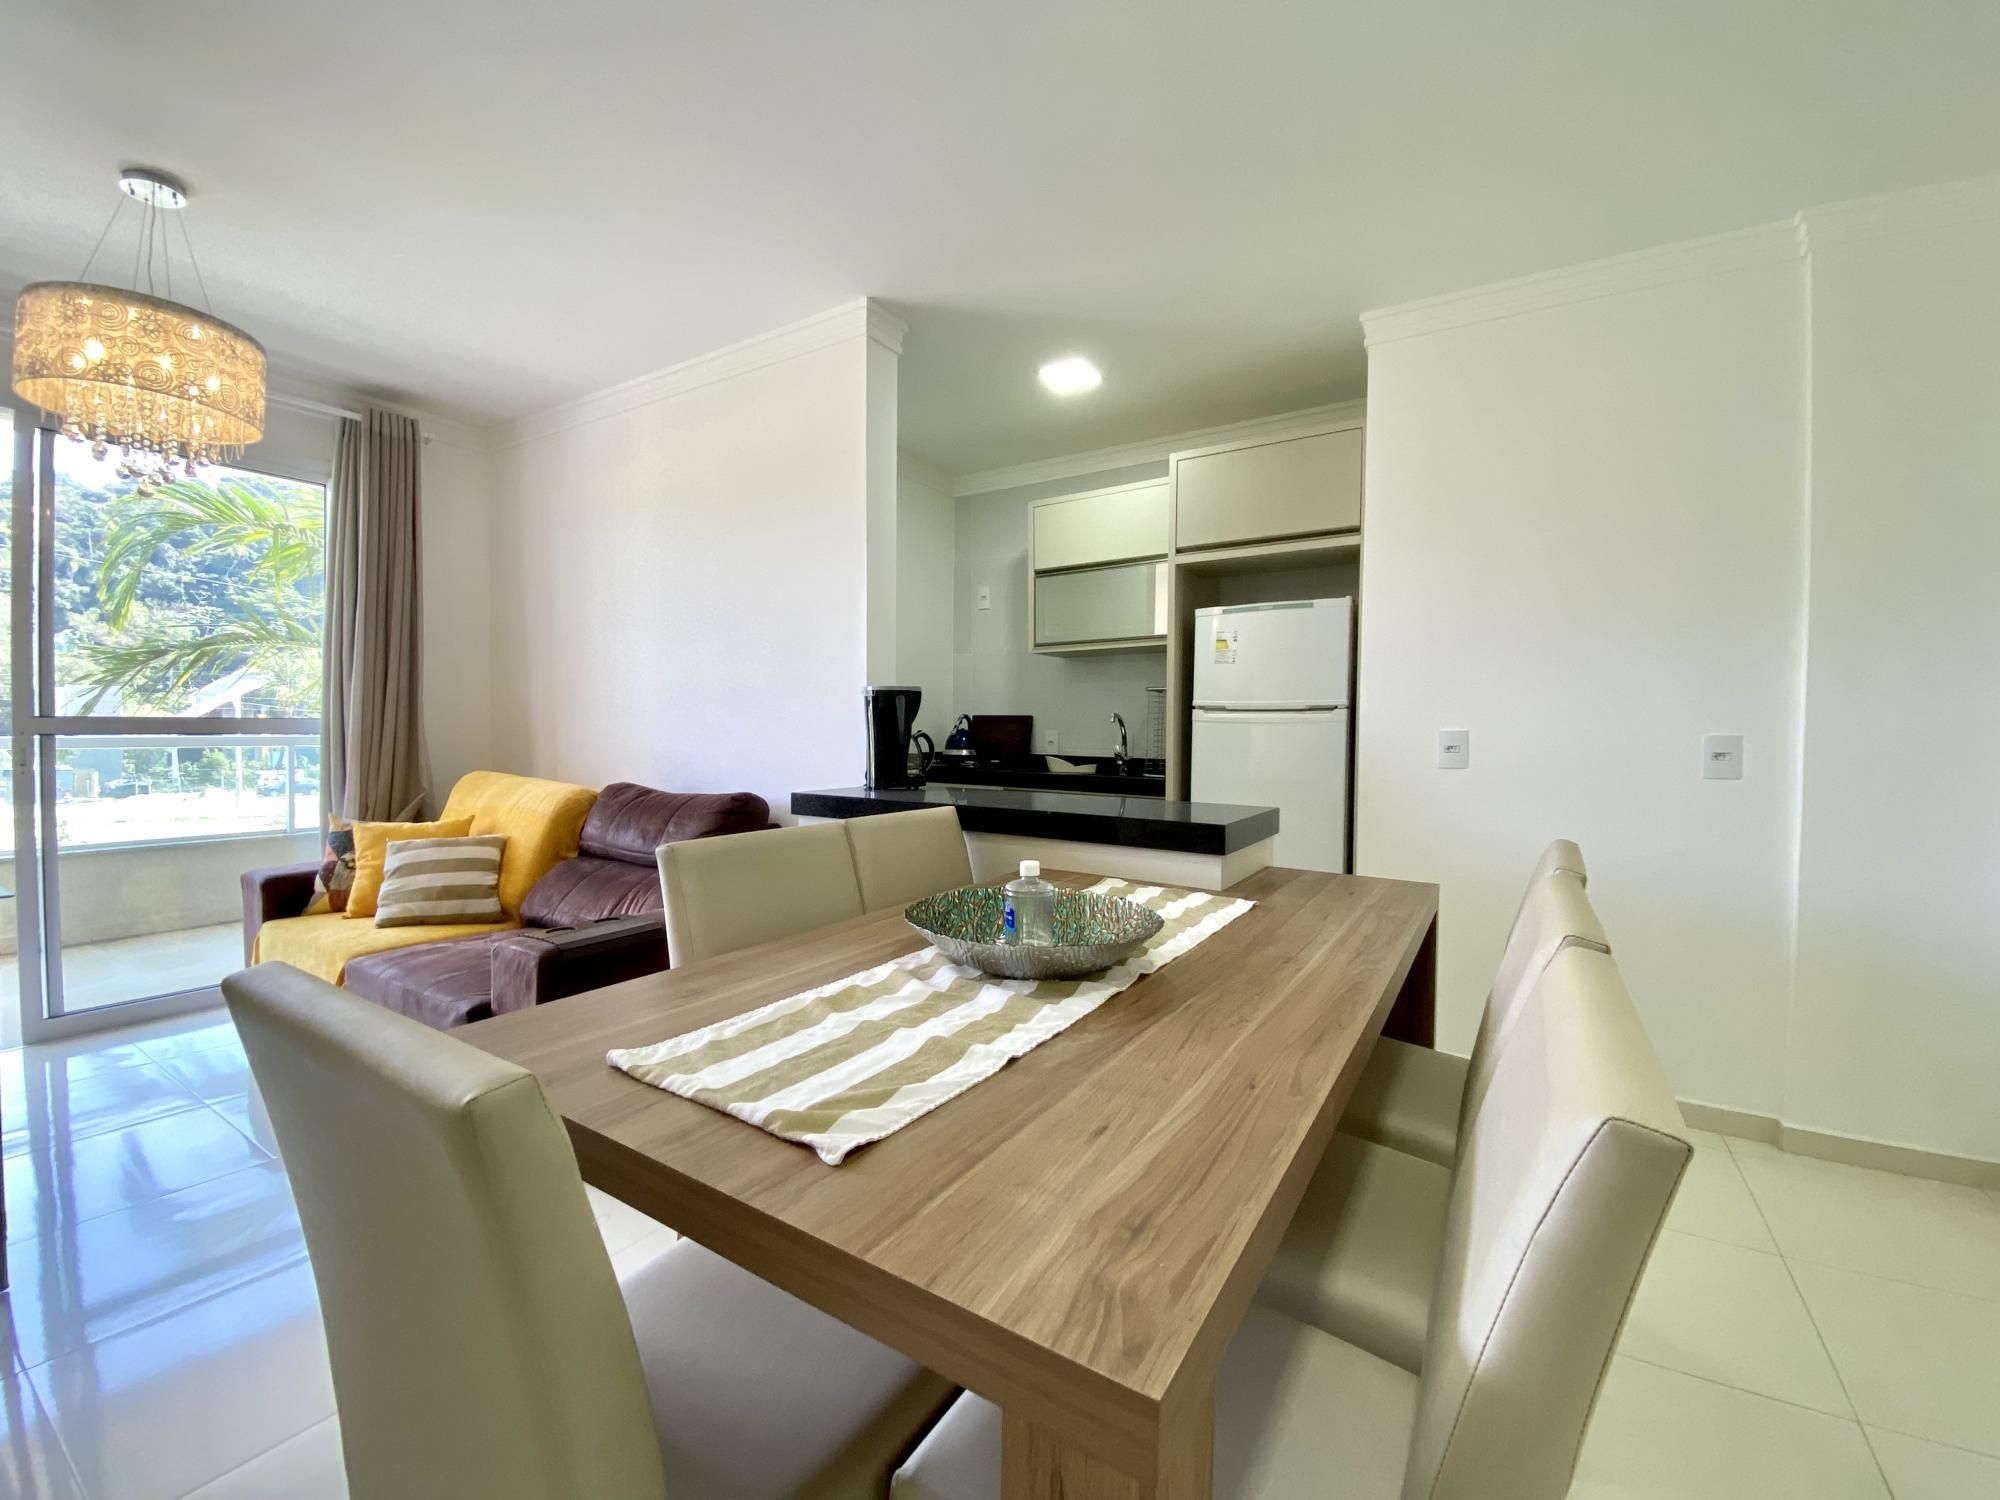 Apartamento com 2 Dormitórios para alugar, 85 m² valor à combinar